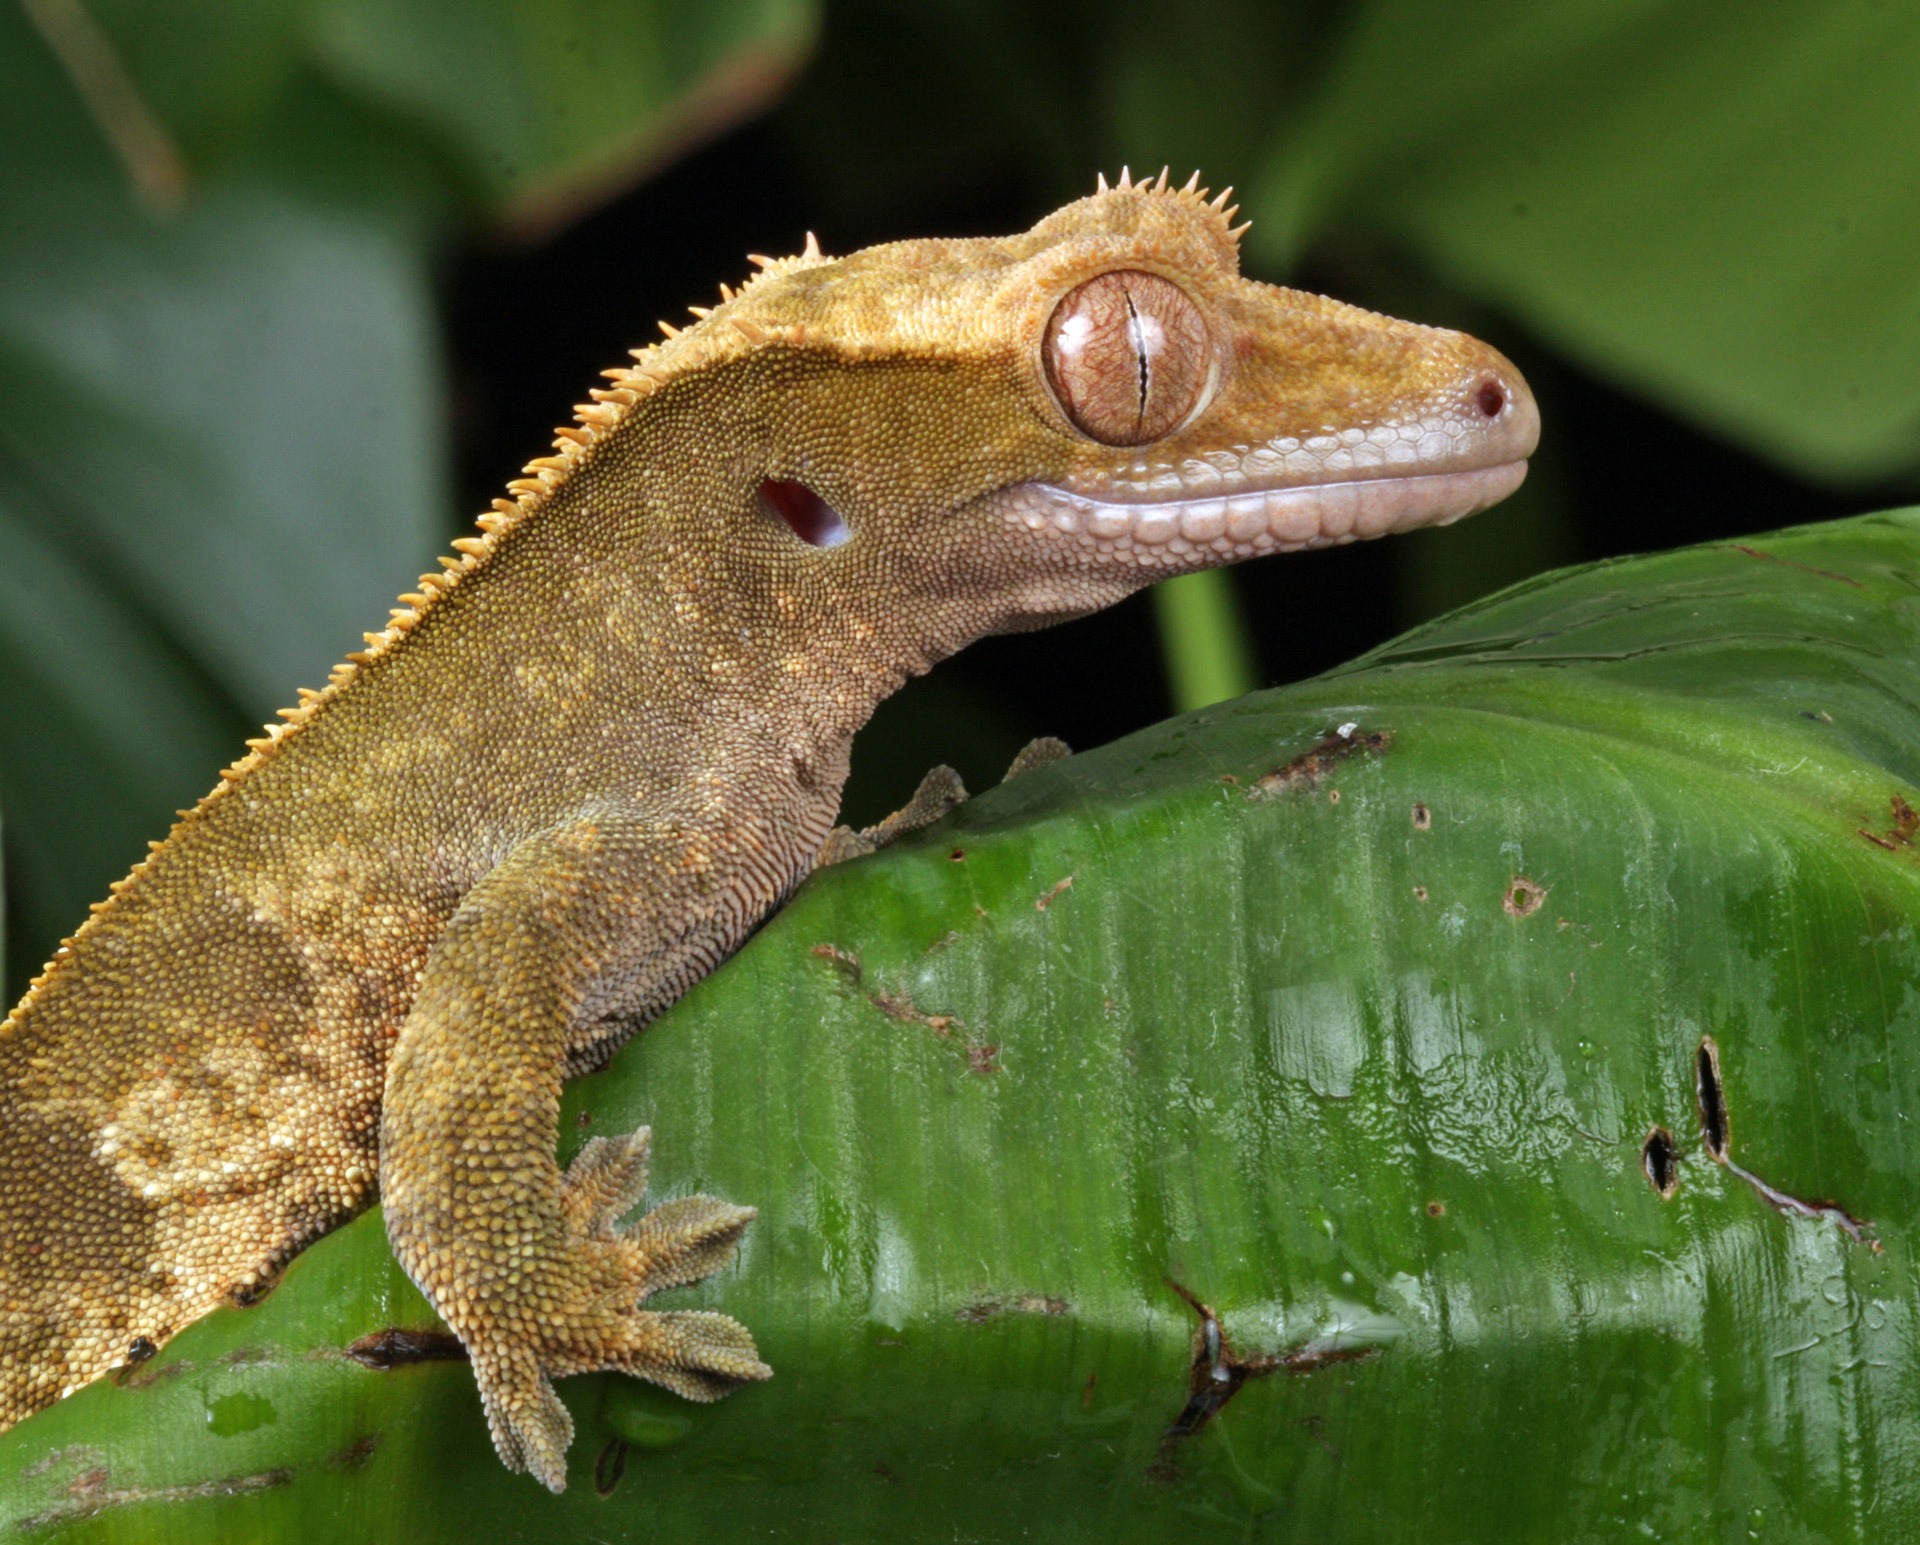 Close-up of a gecko lizard